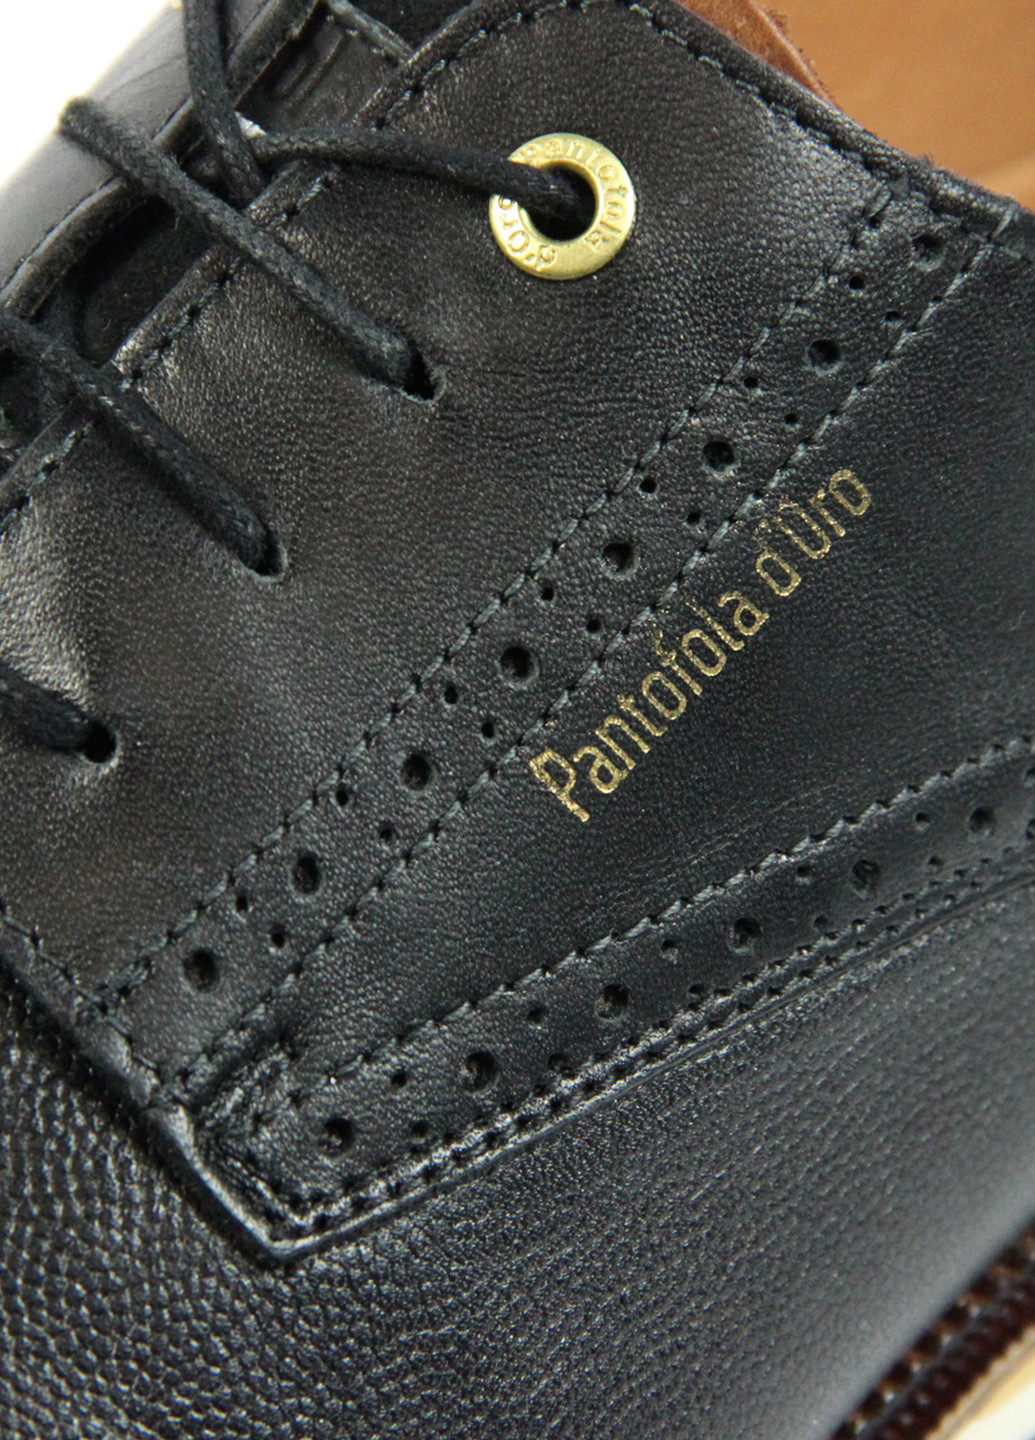 Чоловічі туфлі Pantofola D'oro (270746020)